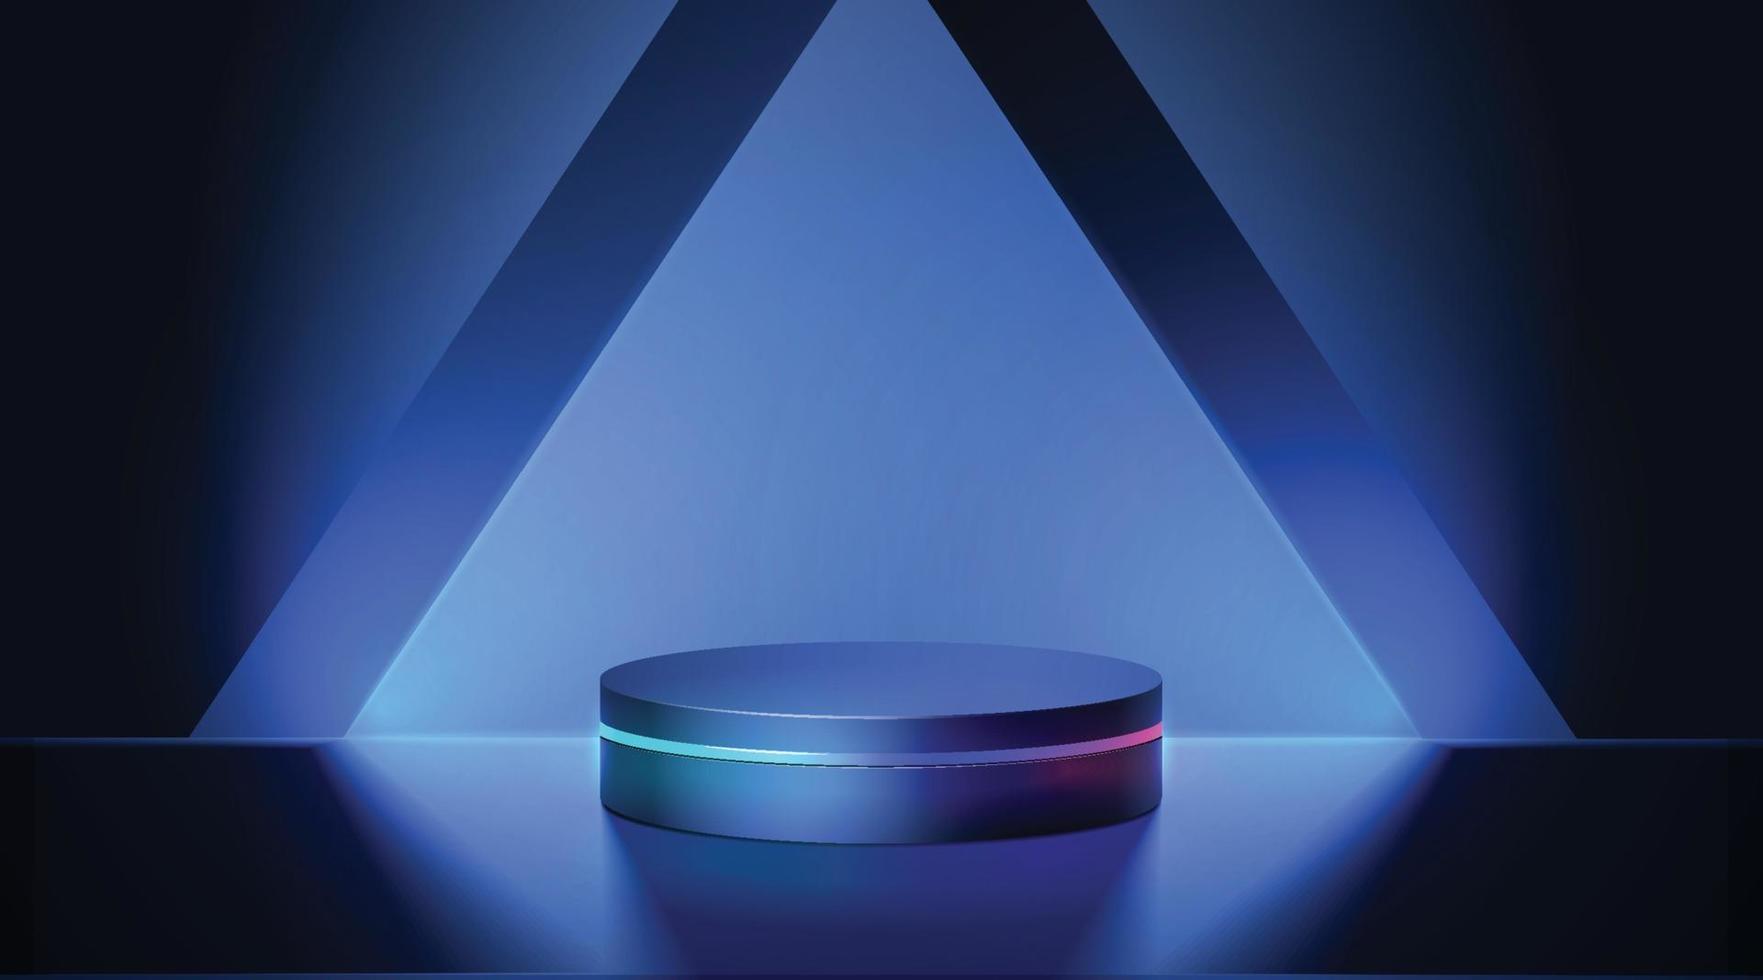 escenario cibernético futurista con podio de neón azul 3d que brilla intensamente para la presentación de productos en la oscuridad vector